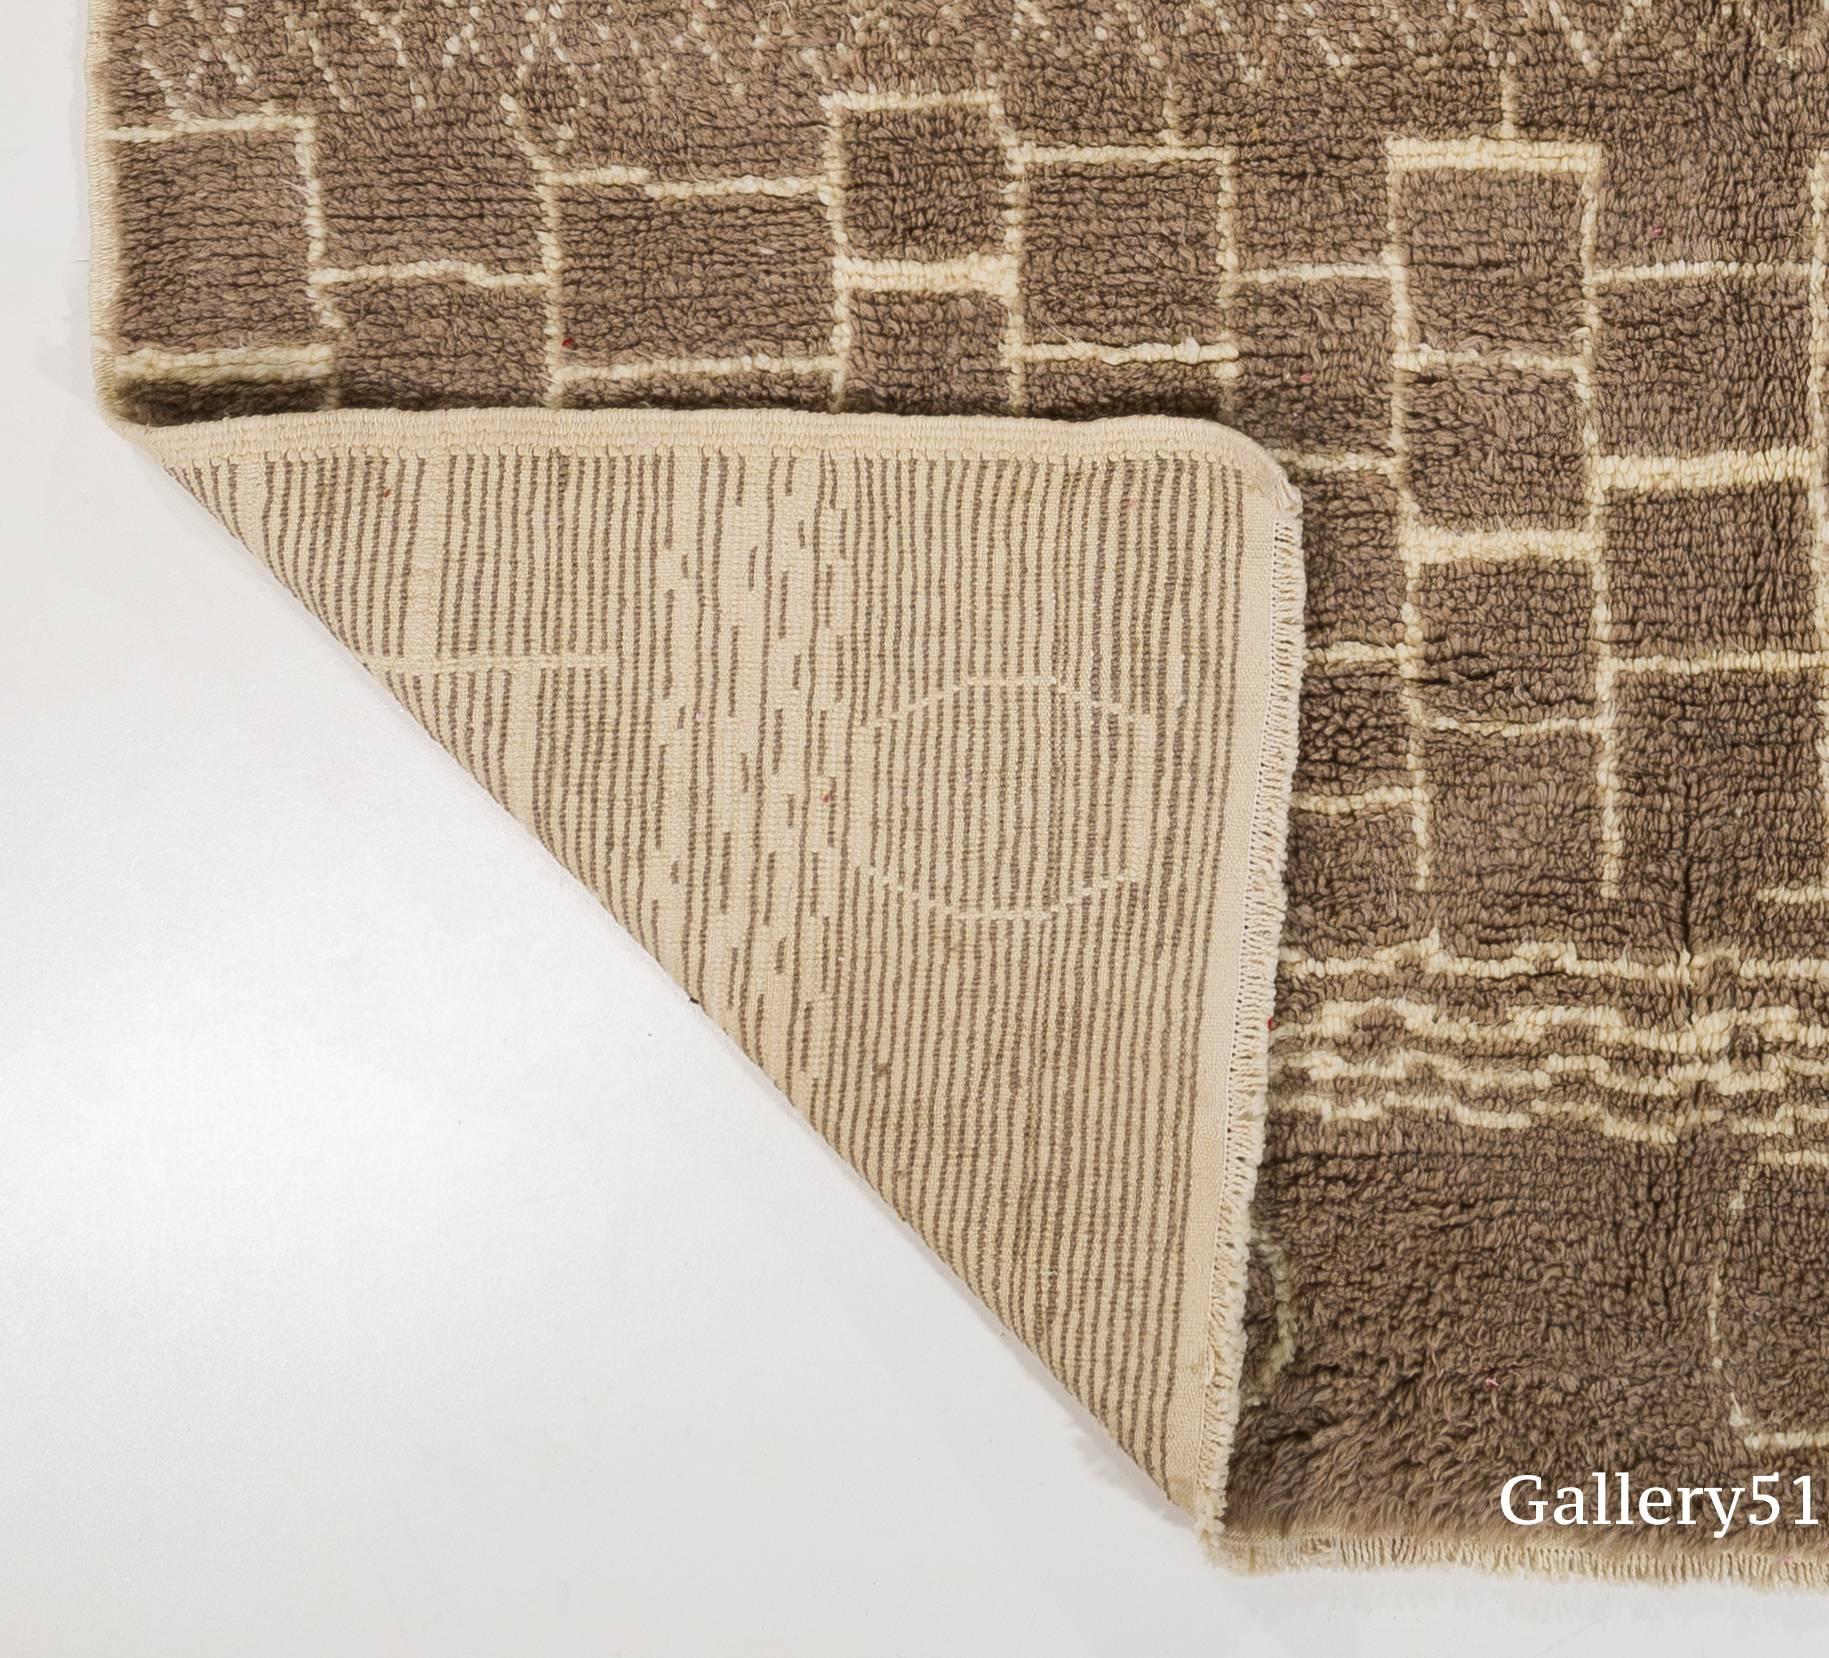 100% Laine naturelle filée à la main de la plus haute qualité.

Ces tapis noués à la main sont fabriqués à partir de zéro dans notre atelier situé en Anatolie centrale, célèbre pour être l'un des plus anciens centres de fabrication de tapis à la